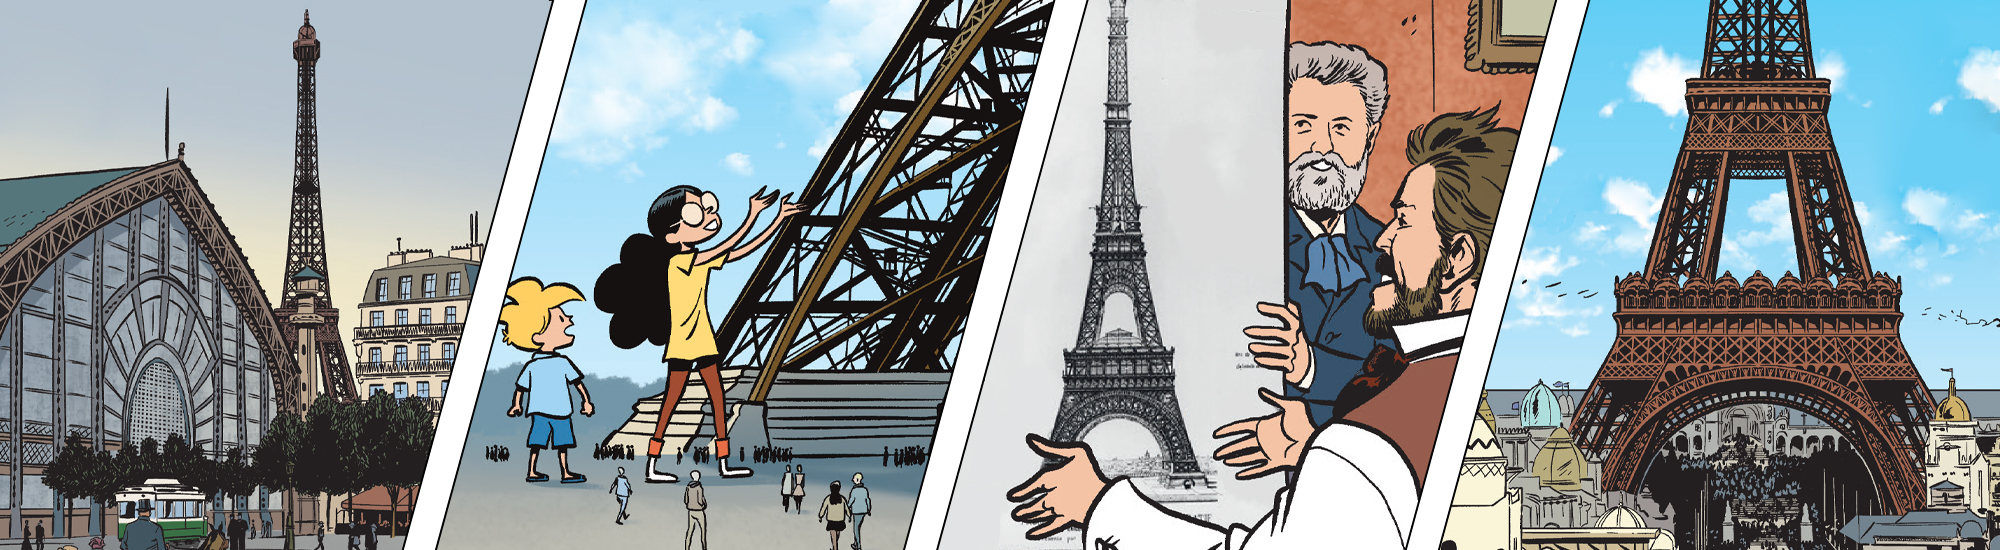 Image La tour Eiffel class=